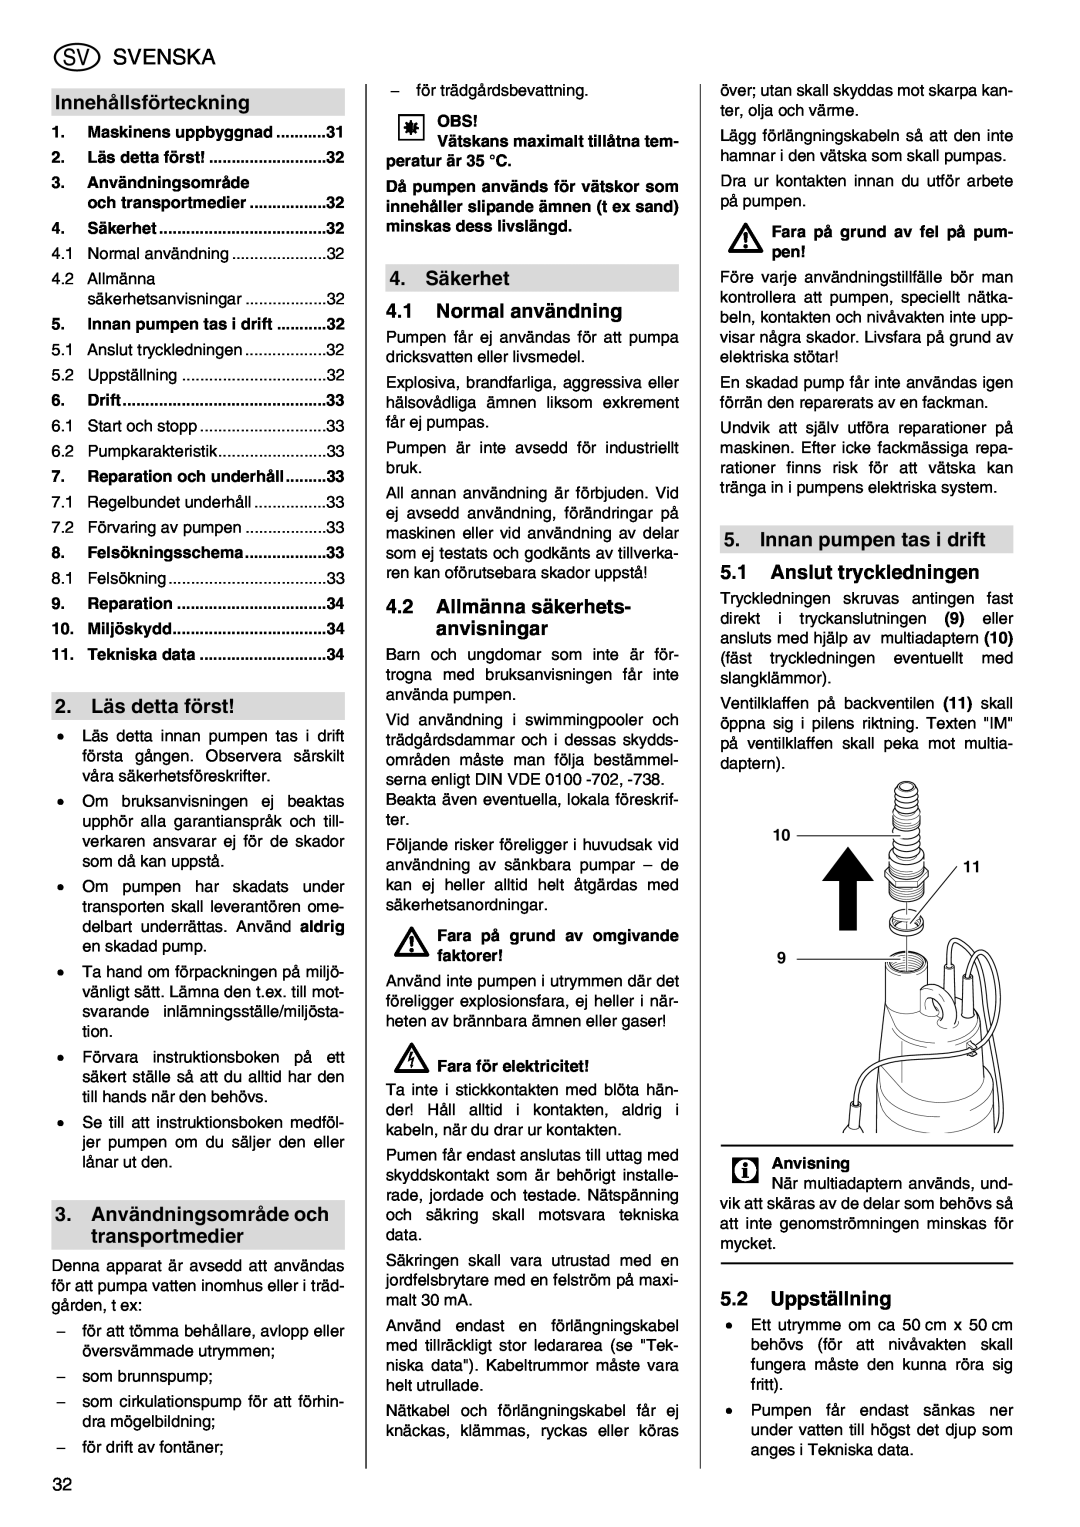 Metabo TDP 7500 S manual Svenska, Innehållsförteckning, 2. Läs detta först, 3.Användningsområde och transportmedier 